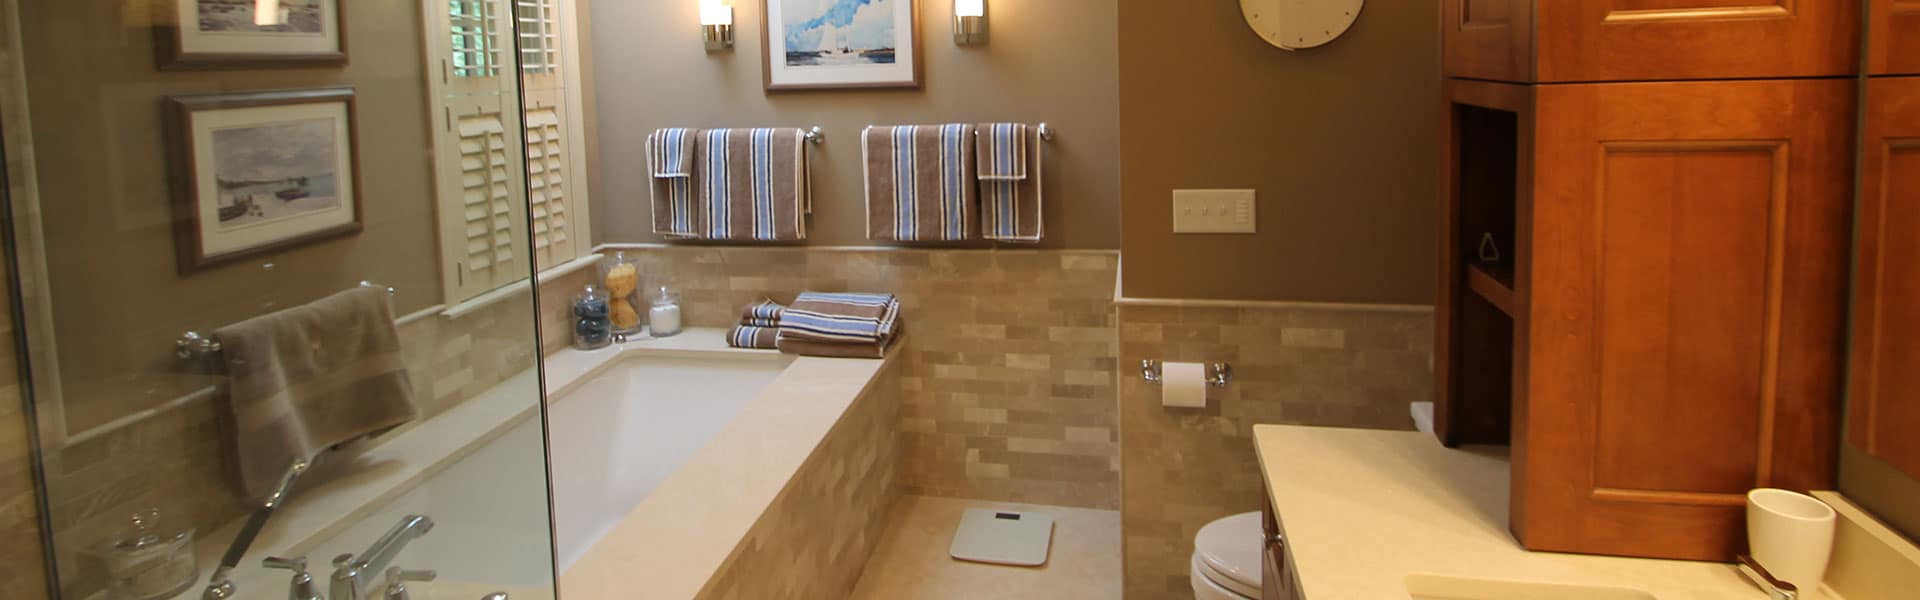 Benefits of Bathroom Remodeling in Amesbury, Massachusetts